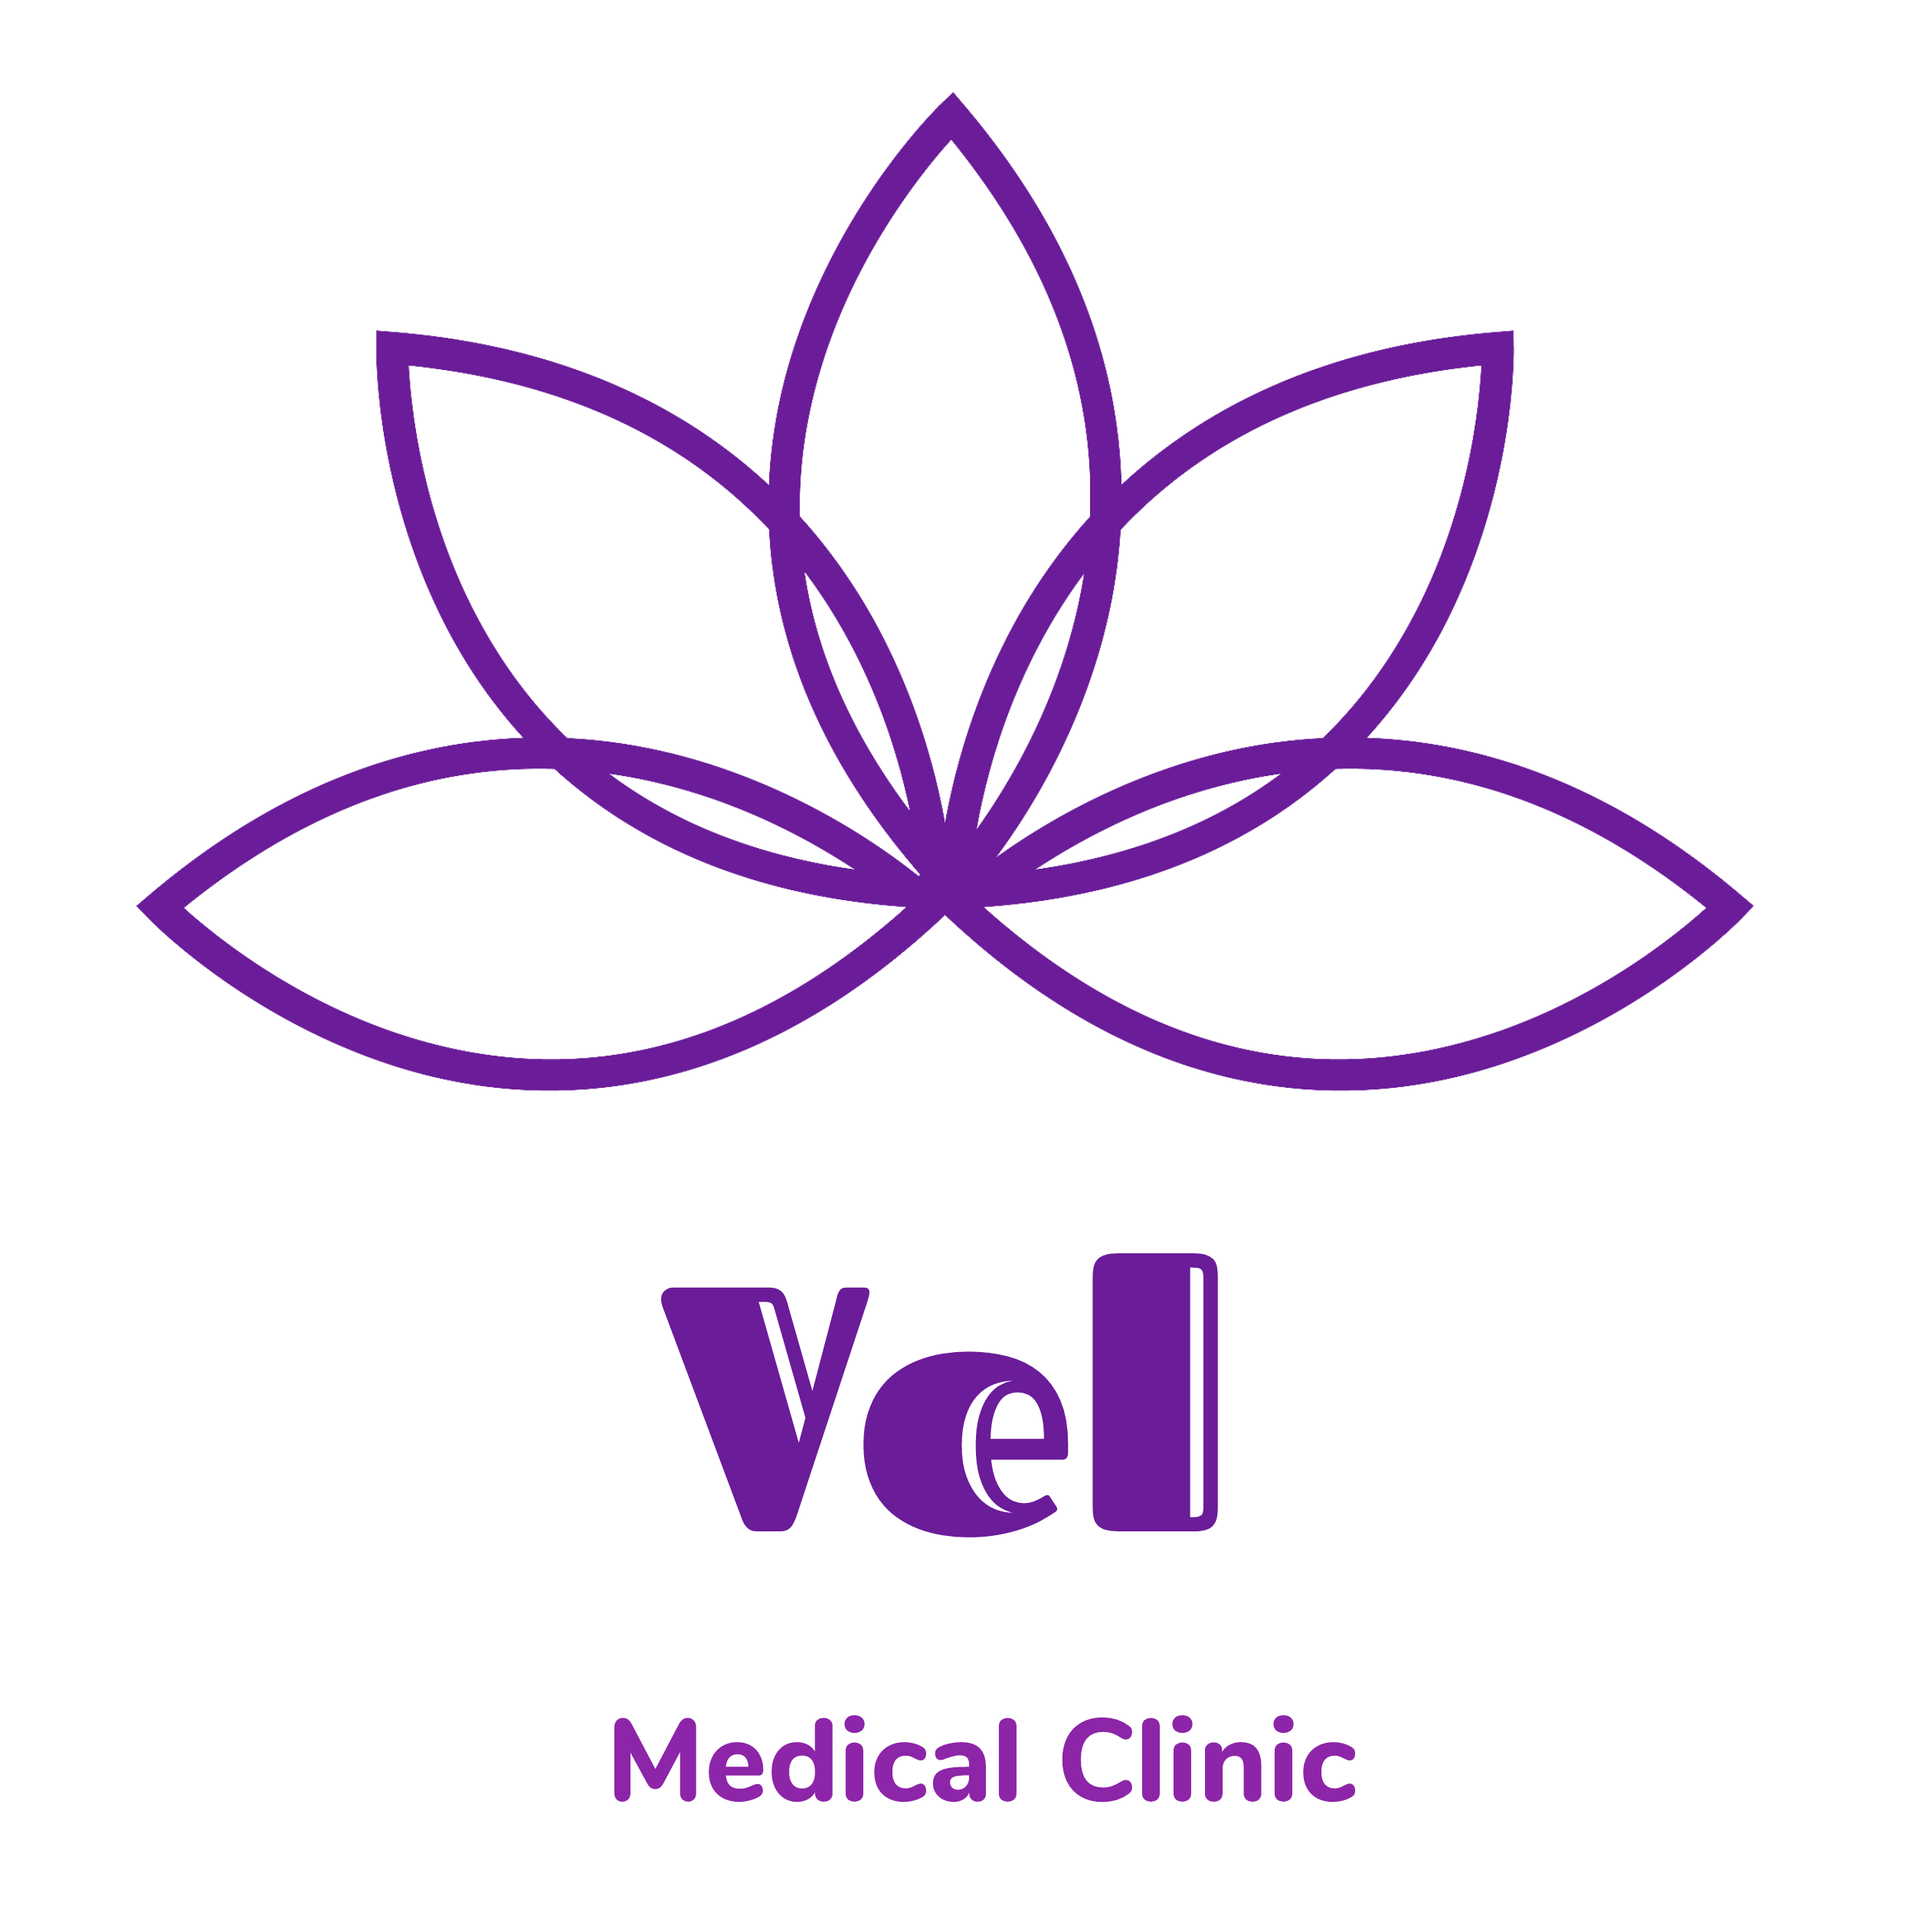 VEL's logo